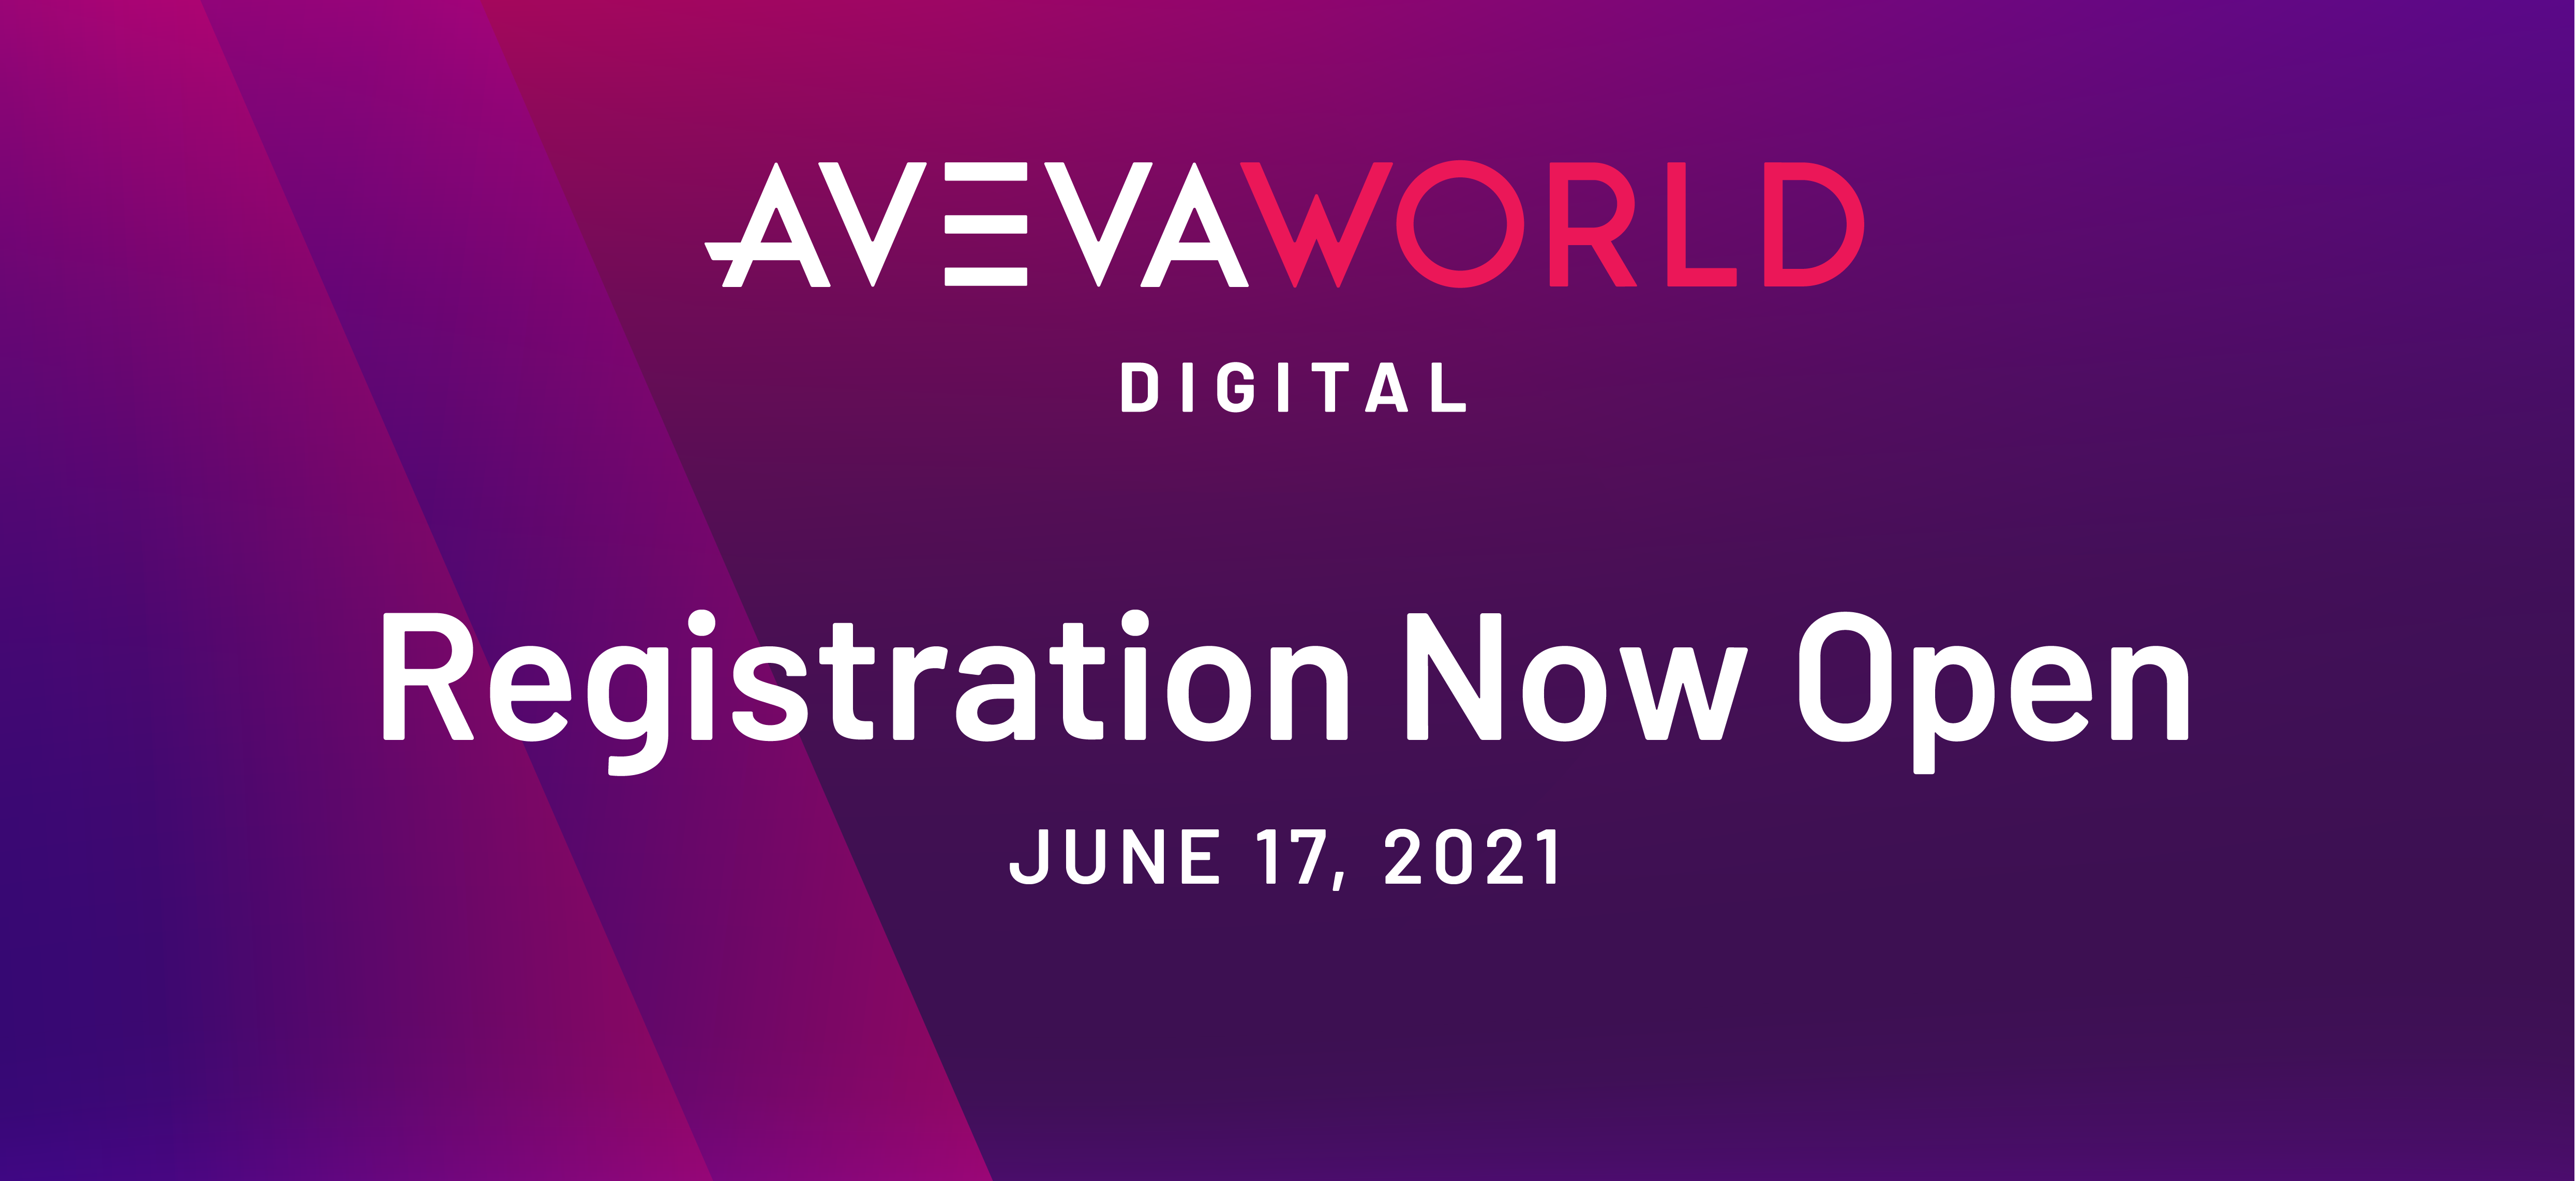 AVEVA World Digital June 17, 2021